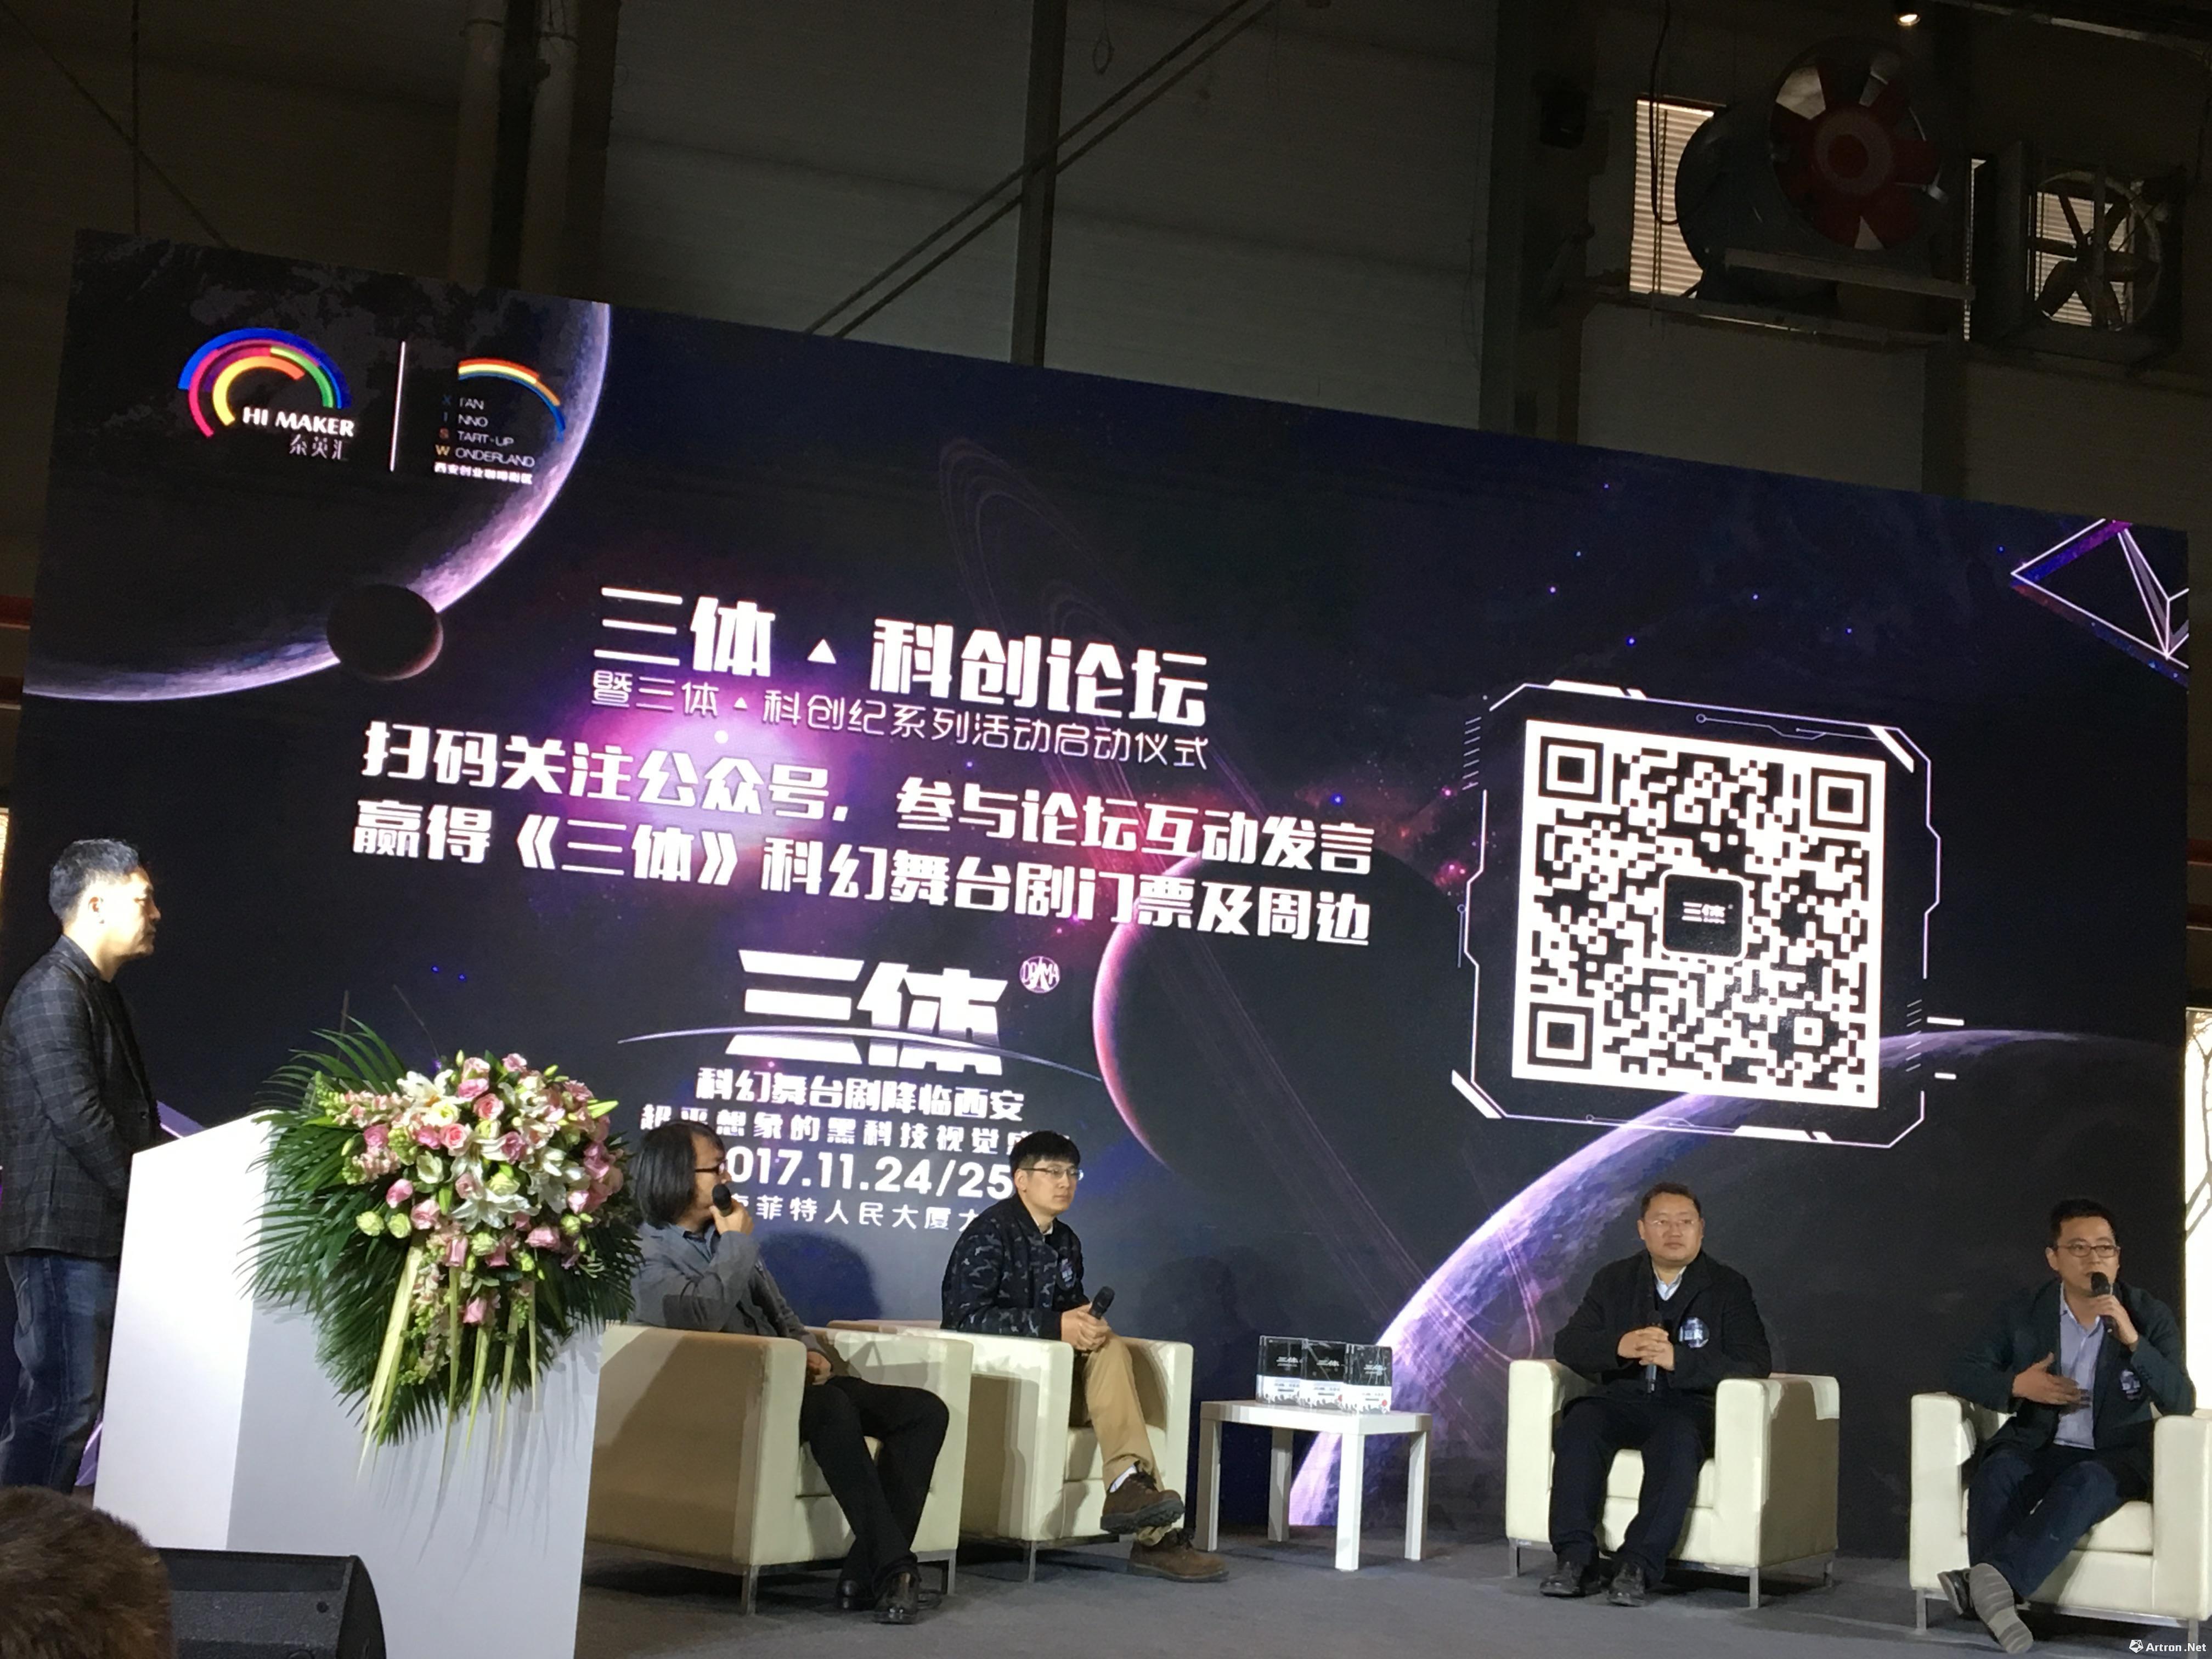 话剧《三体》即将西安上演   引发硬科技和科幻文化探讨 ()